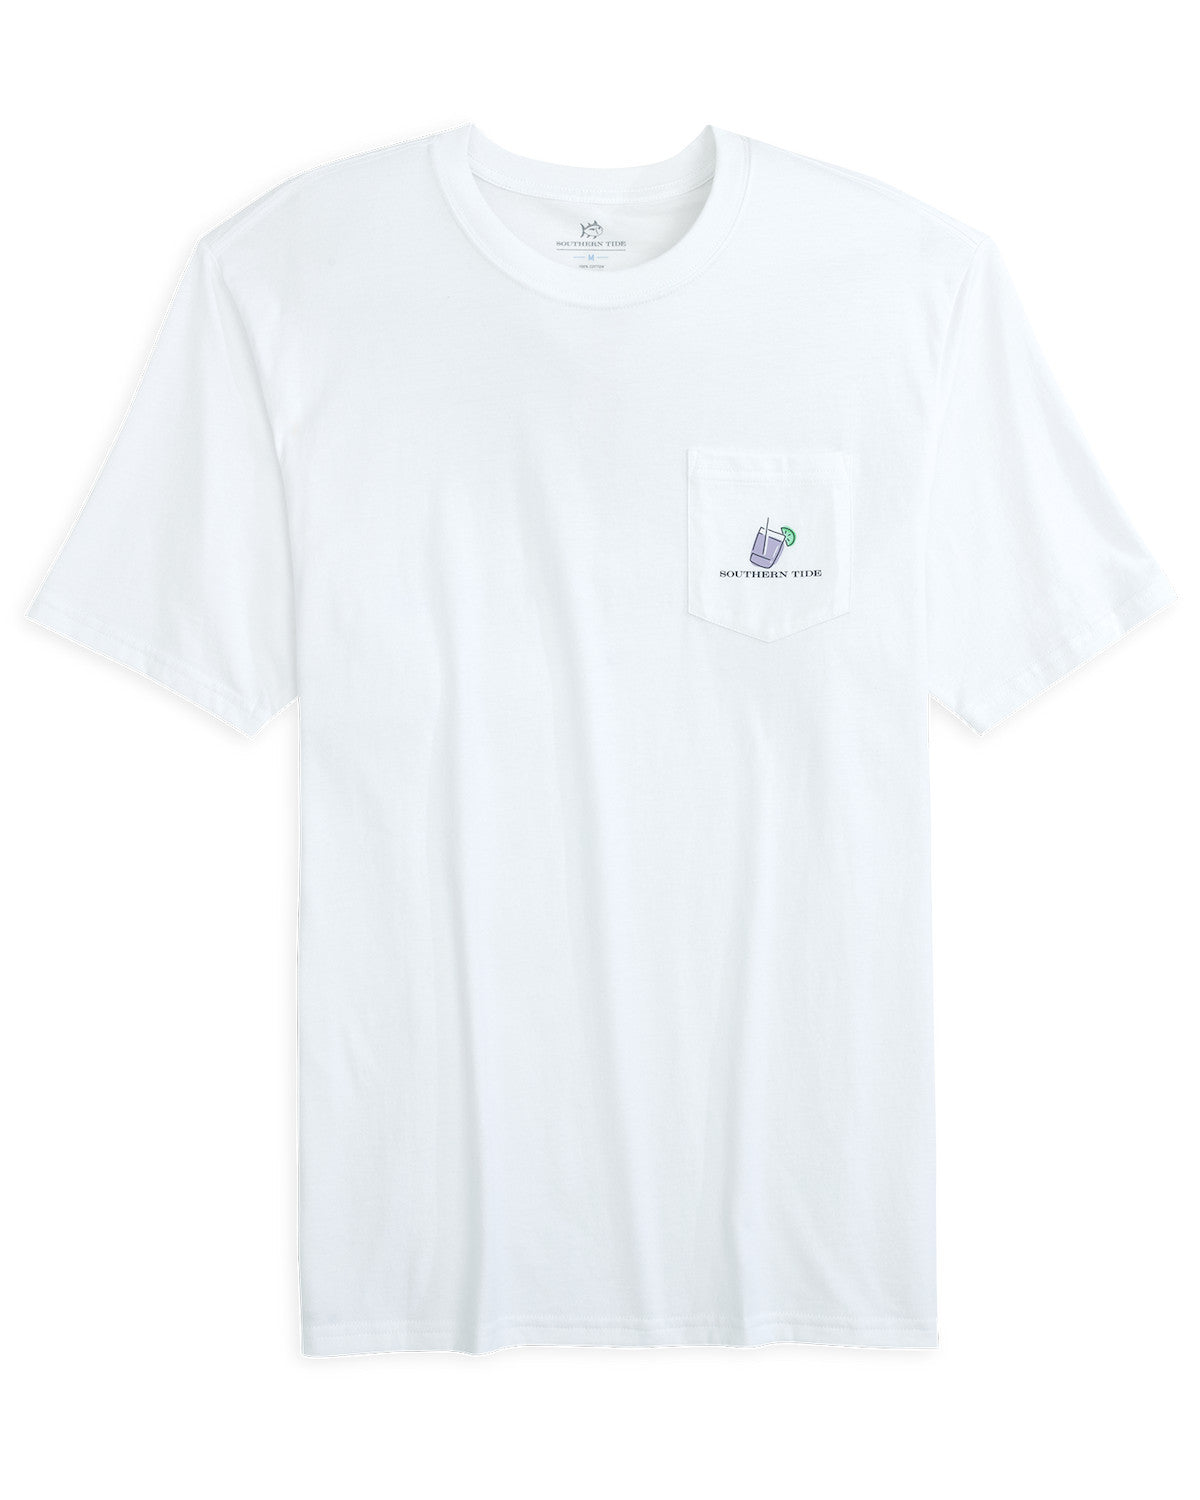 Dazed & Transfused Skipjack T-Shirt